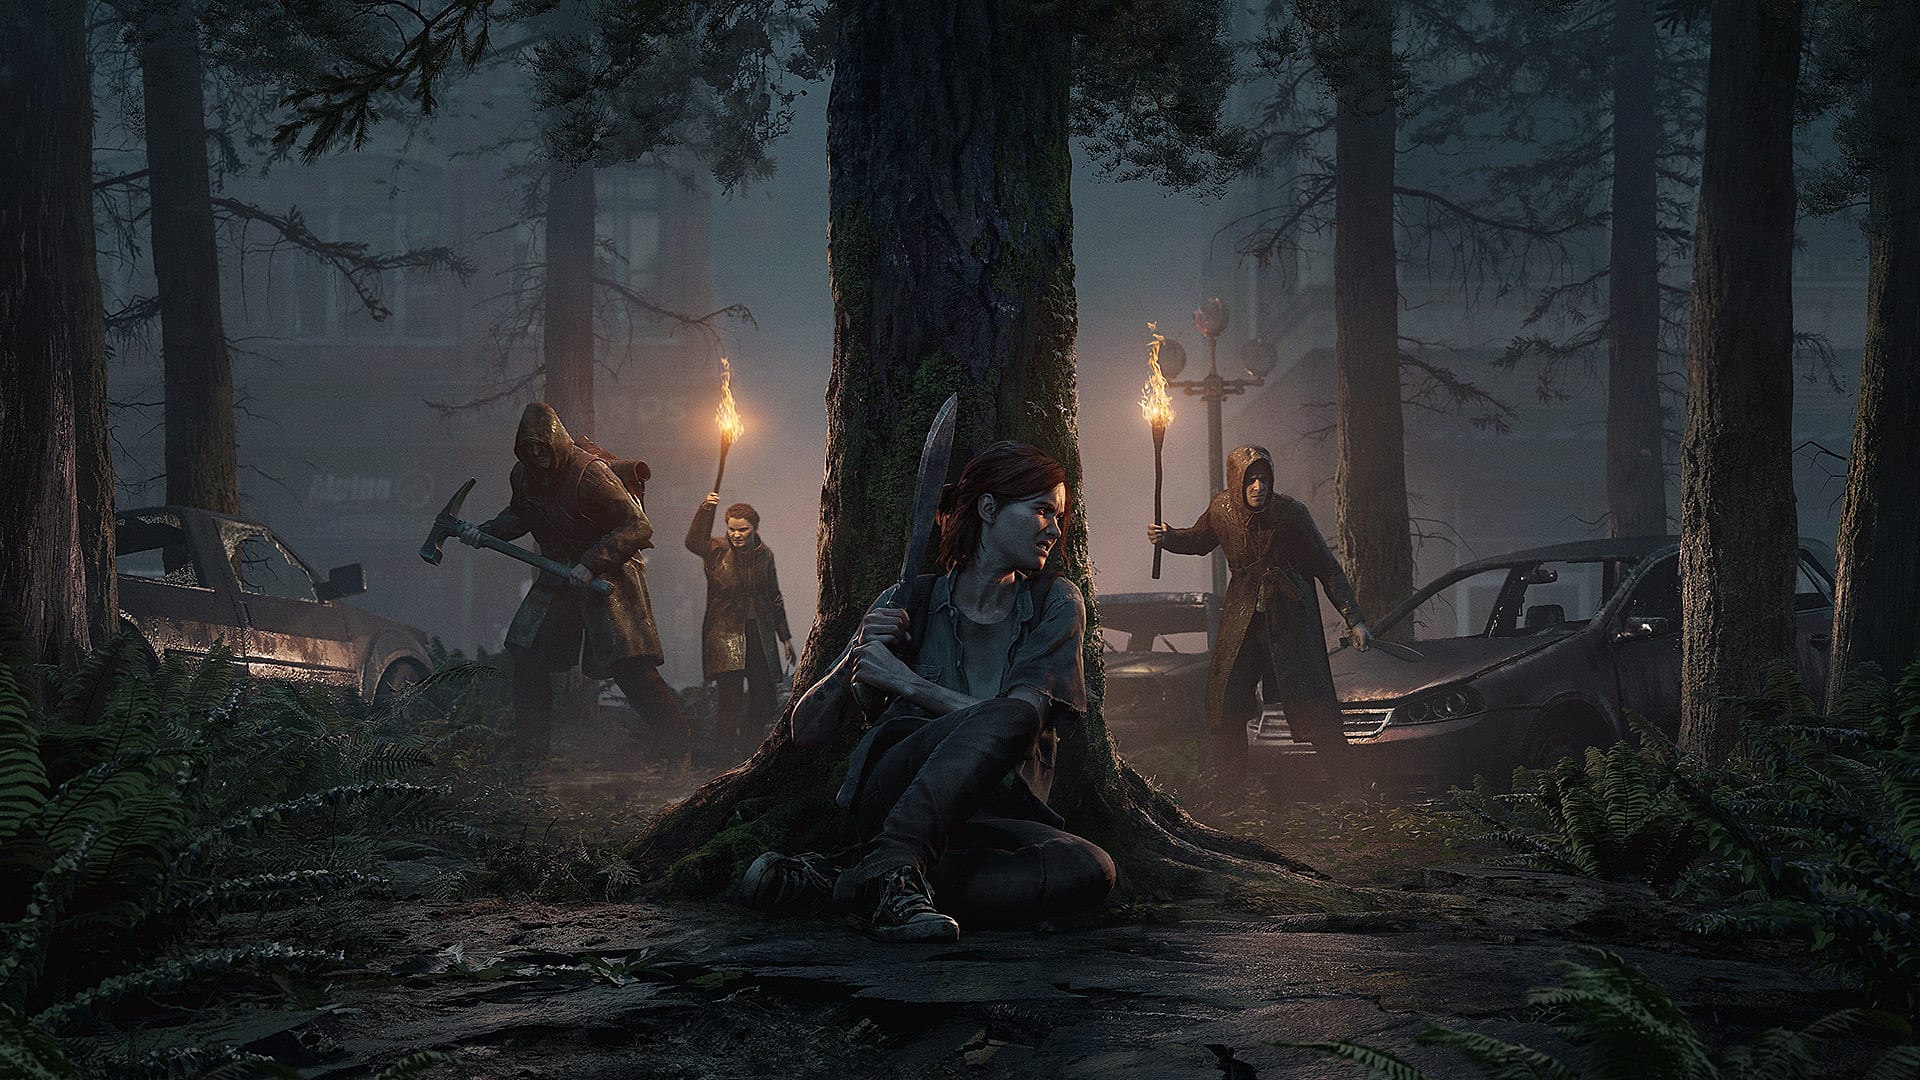 Nếu bạn là một fan của trò chơi The Last of Us, hãy xem ngay các hình nền PS4 của phiên bản Last of Us 2 mới nhất. Với độ phân giải cao và thiết kế đẹp mắt, bạn sẽ không bao giờ muốn bỏ qua hình nền này. Hãy xem các hình ảnh liên quan để có được tình yêu đối với phiên bản game mới nhất của The Last of Us.